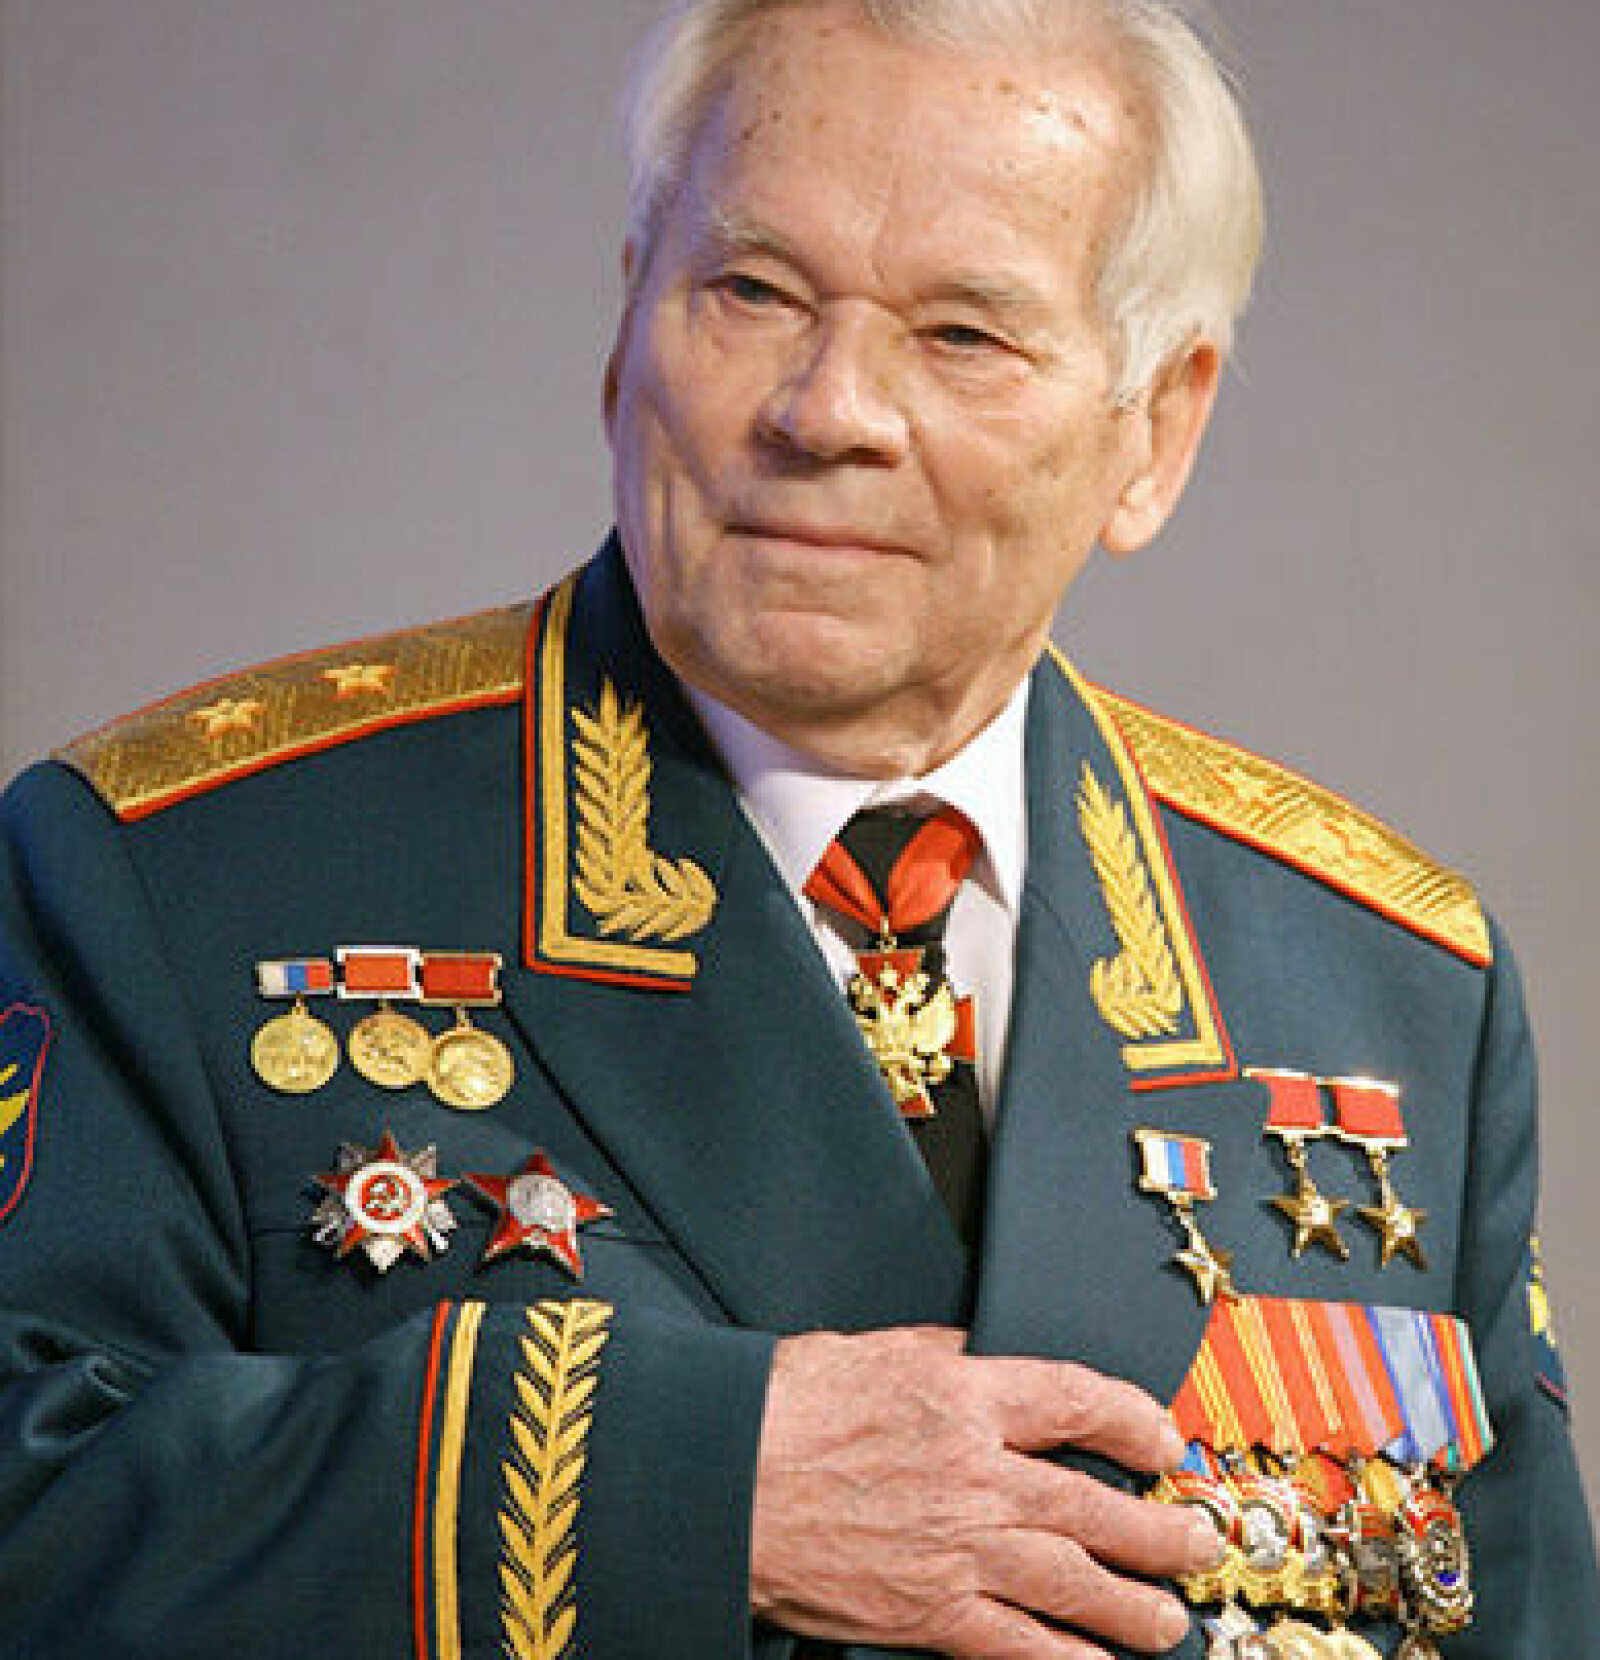 <b>KALASJNIKOVENS FAR:</b> 10. november 2019 var det 100 år siden Mikhail Kalashnikov ble født. Det var han som konstruerte automtriflen AK-47, som er det våpenet som er skyldig i flest menneskers død, selv målt opp mot atombombene i 1945.